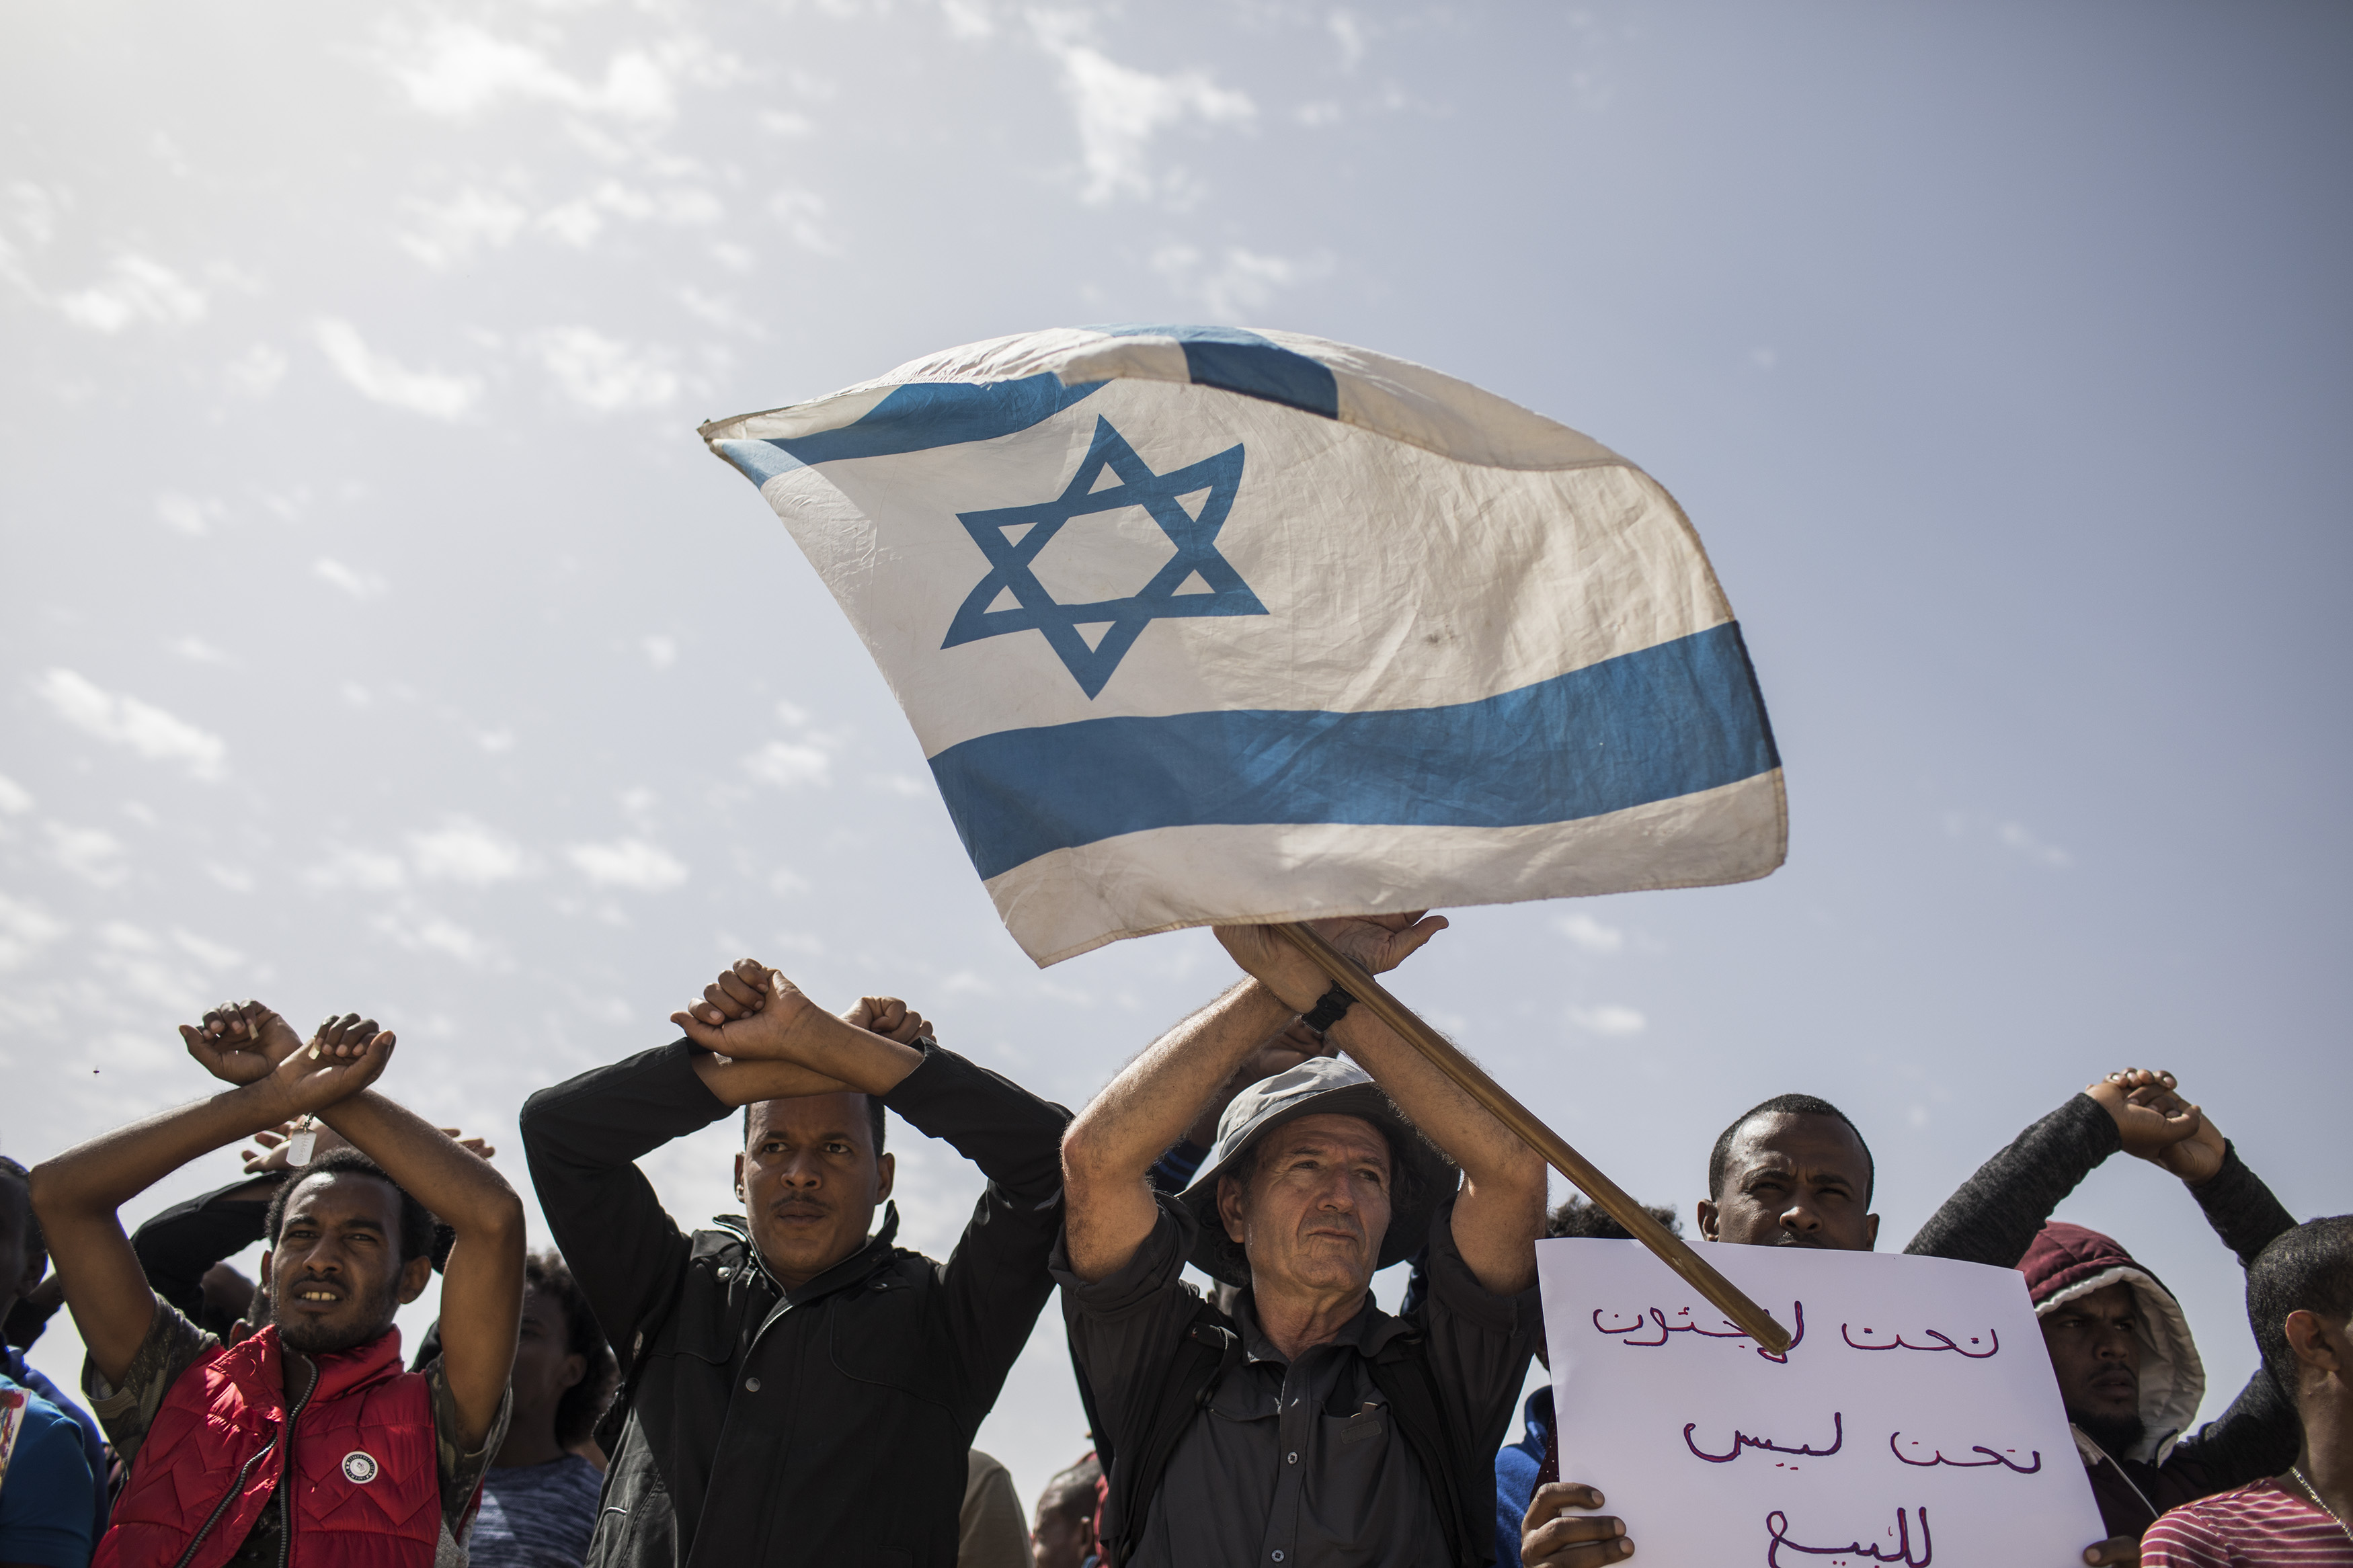 22.02.2018, Israel, Saharonim Gefängnis: Asybewerber und ihre Unterstützer schwenken eine israelische Fahne vor dem Gefängnis Saharonim in der Wüste Negev um gegen Regierungspläne zu protestieren, Afrikaner zwangsweise abzuschieben. Israel betrachtet die vor allem aus Eritrea und dem Sudan stammenden Flüchtlinge als illegale Einwanderer. Asylanträgen wird nur in extrem seltenen Fällen stattgegeben. Nach Medienberichten hat Israel eine Vereinbarung mit Ruanda und Uganda getroffen, dafür gibt es aber keine Bestätigung. Photo by: ilia yefimovich/picture-alliance/dpa/AP Images